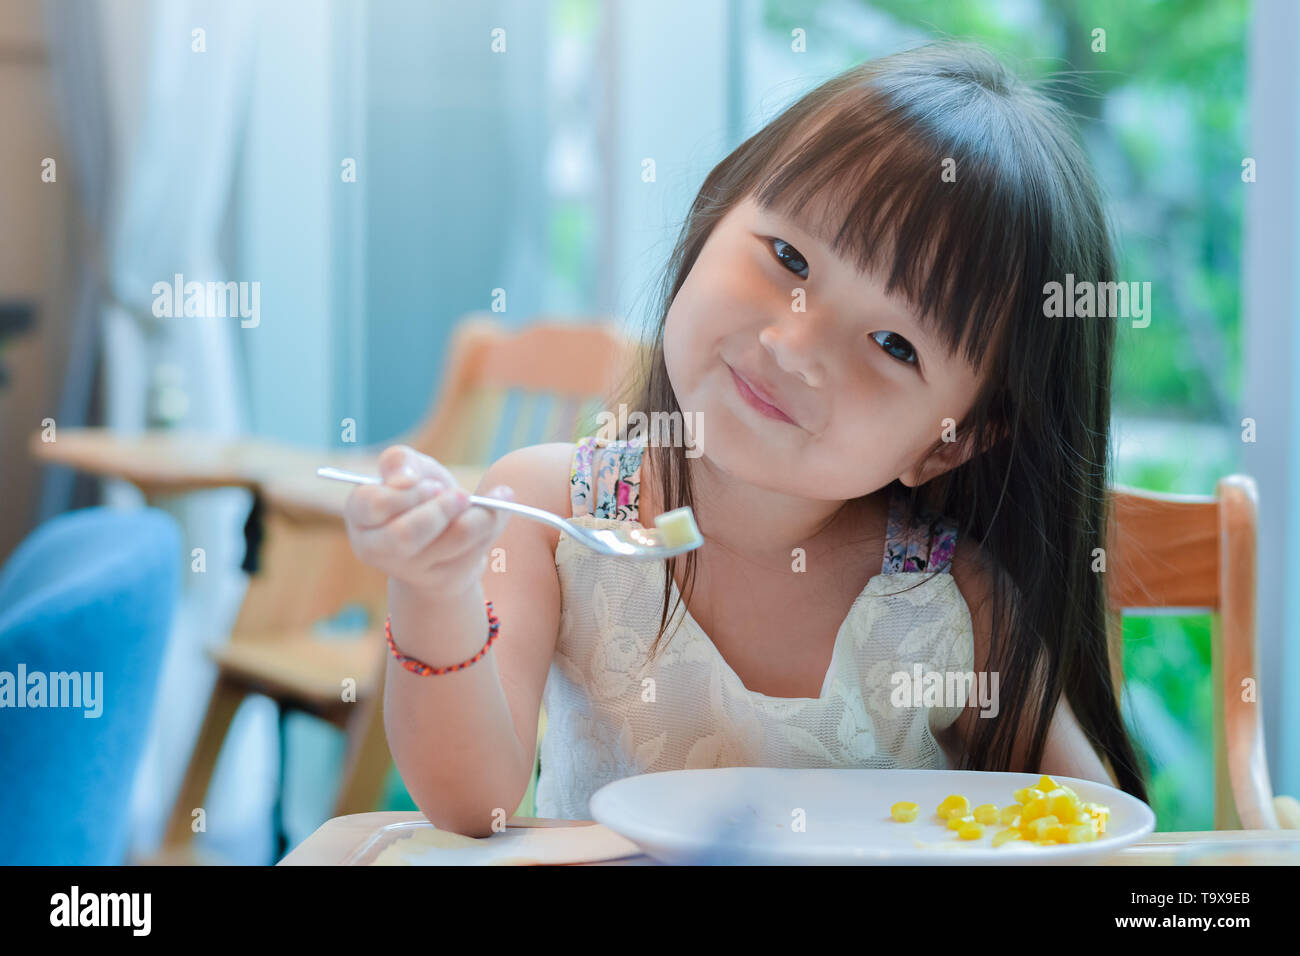 Piccolo bambino asiatico ragazza avente la prima colazione al mattino con un felice volto sorridente e mostrando il cibo su un cucchiaio. Foto Stock